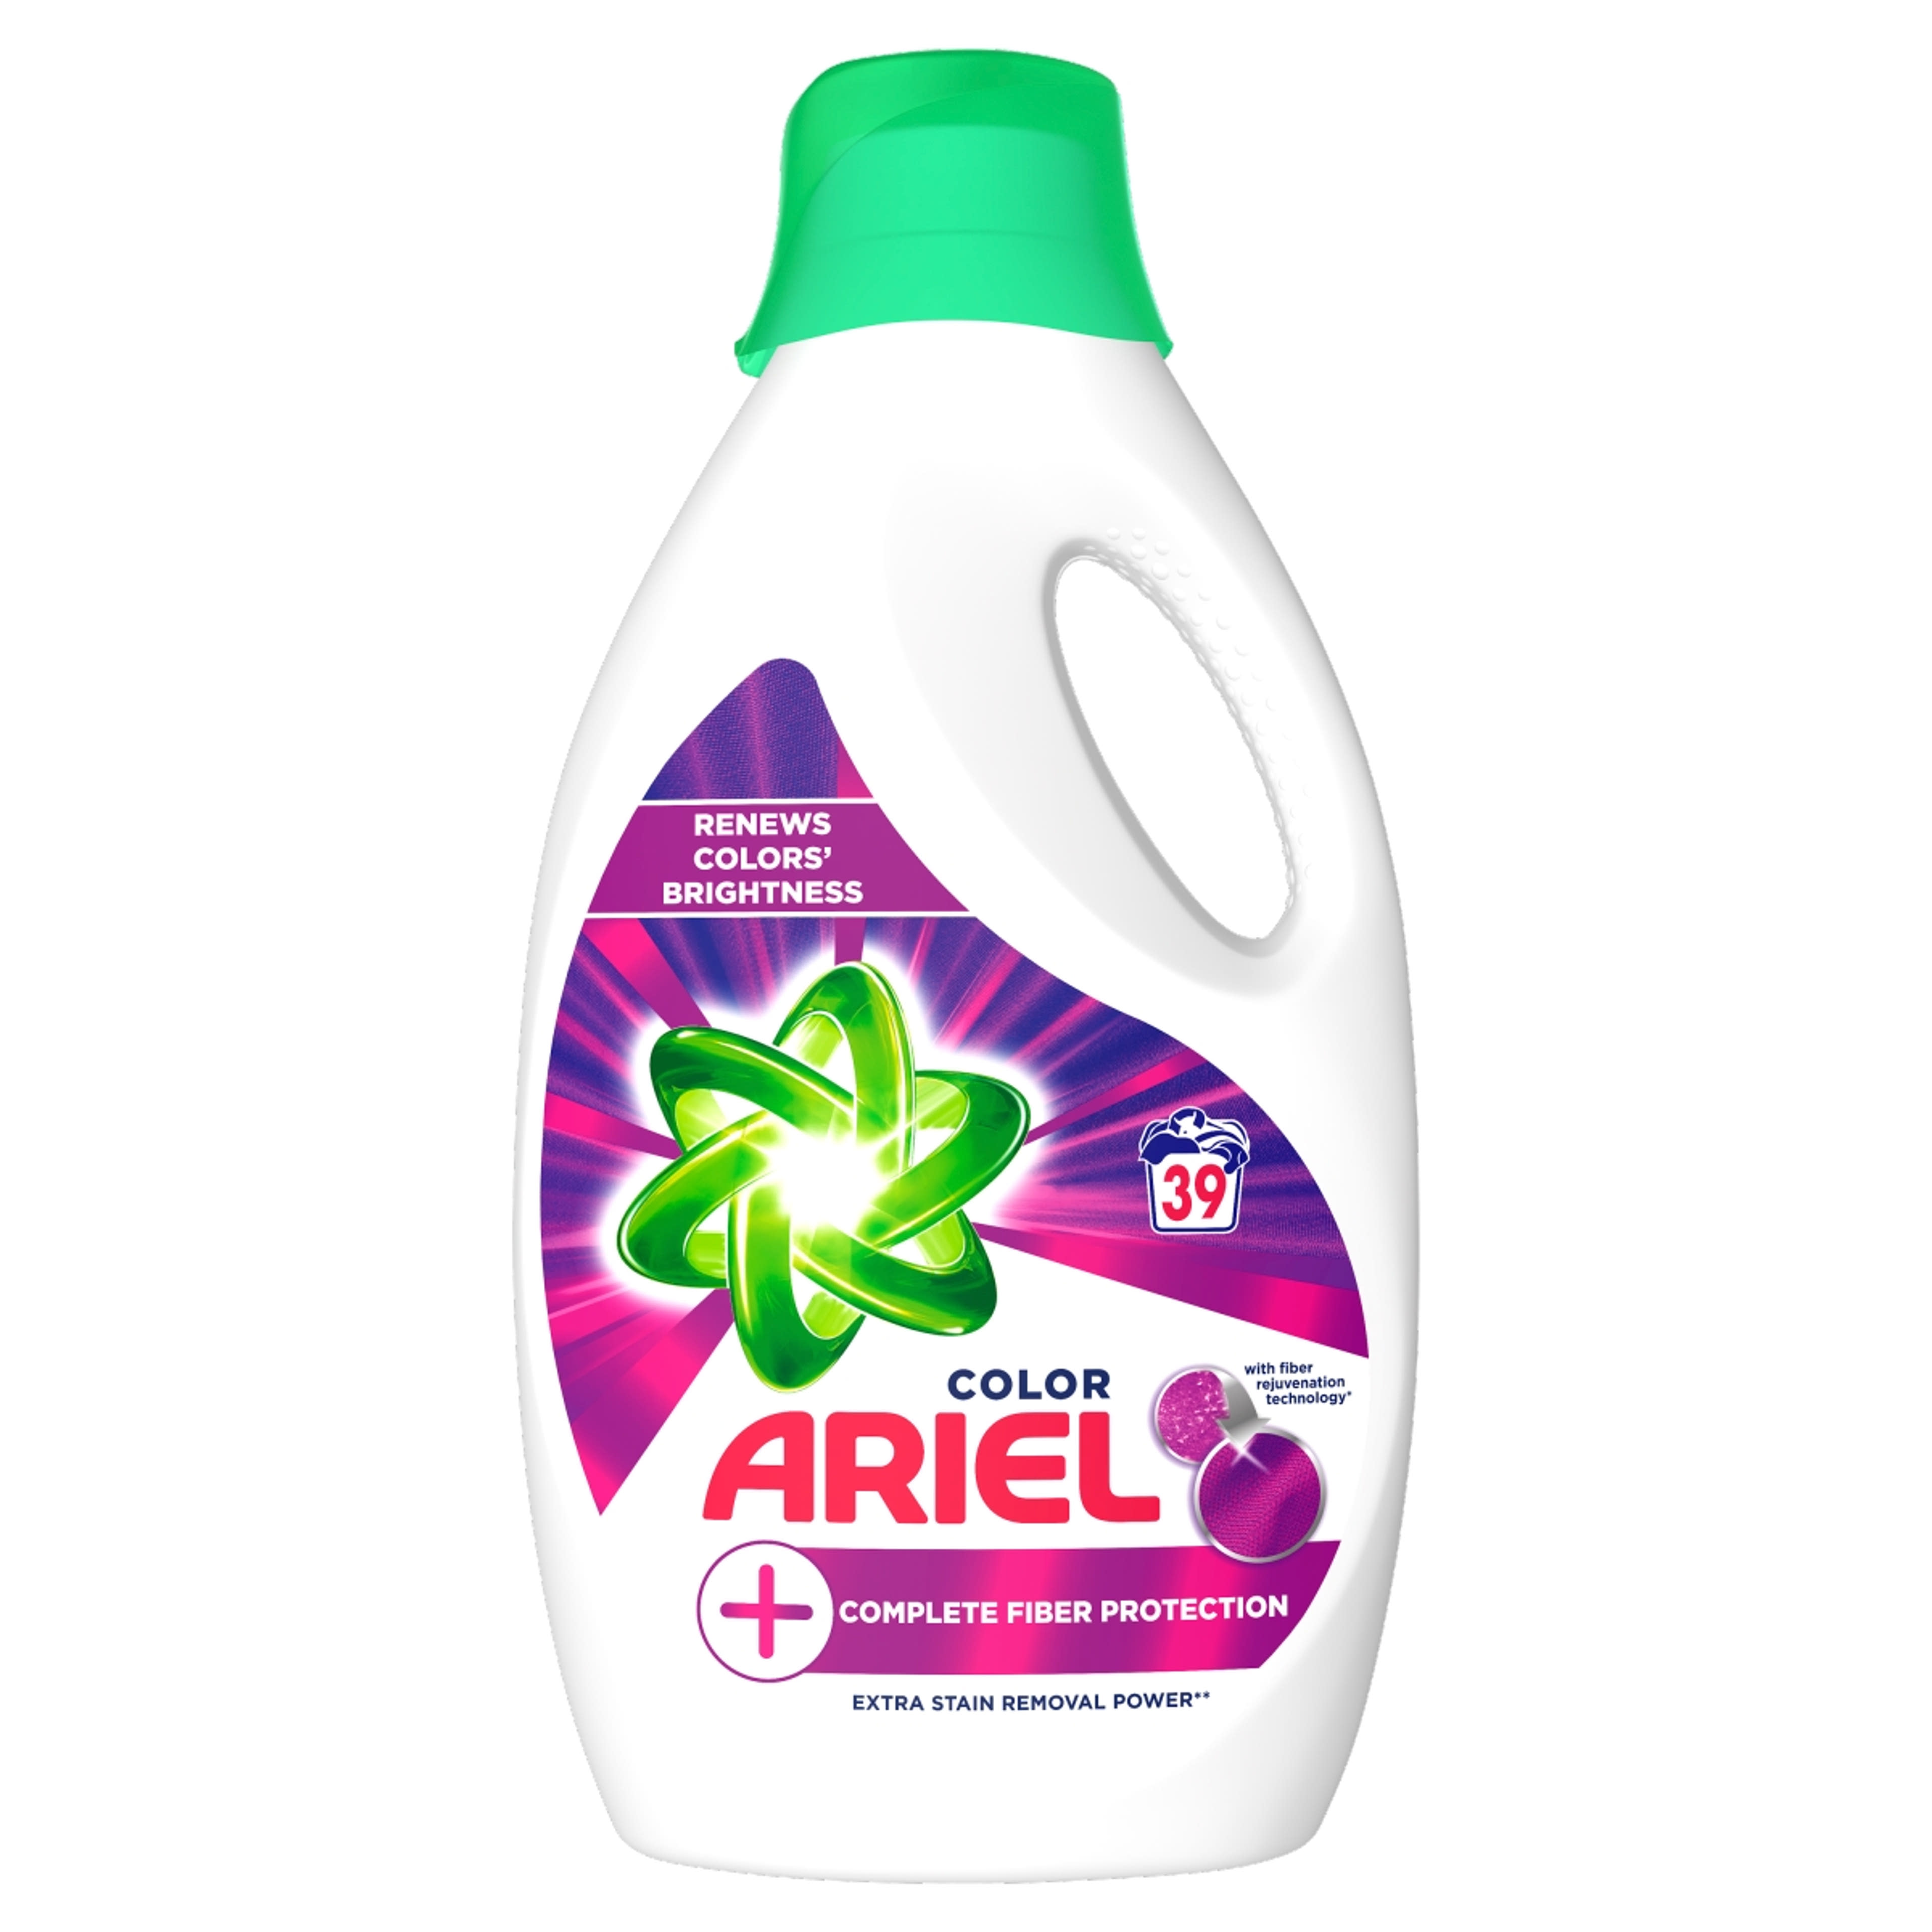 Ariel folyékony mosószer color, 39 mosás - 2145 ml